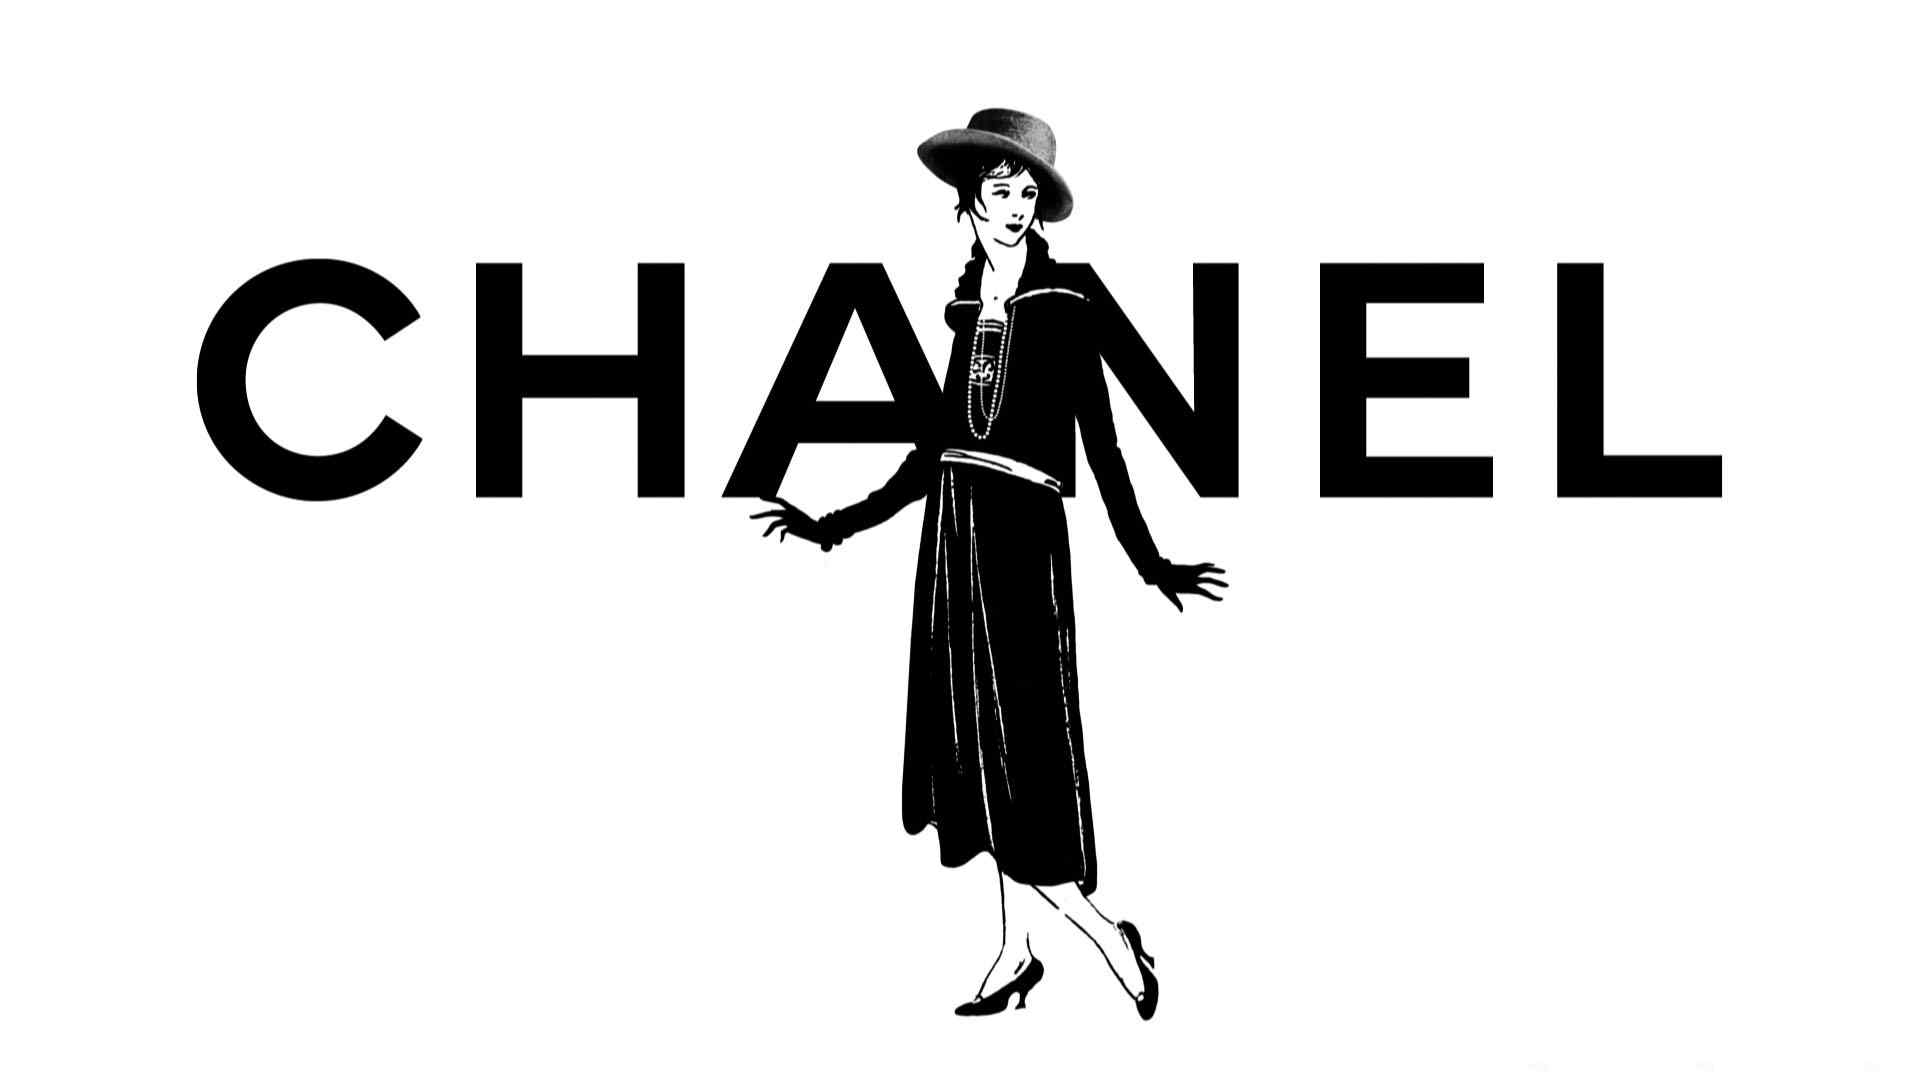 香奈儿chanel英文logo标志图片桌面壁纸